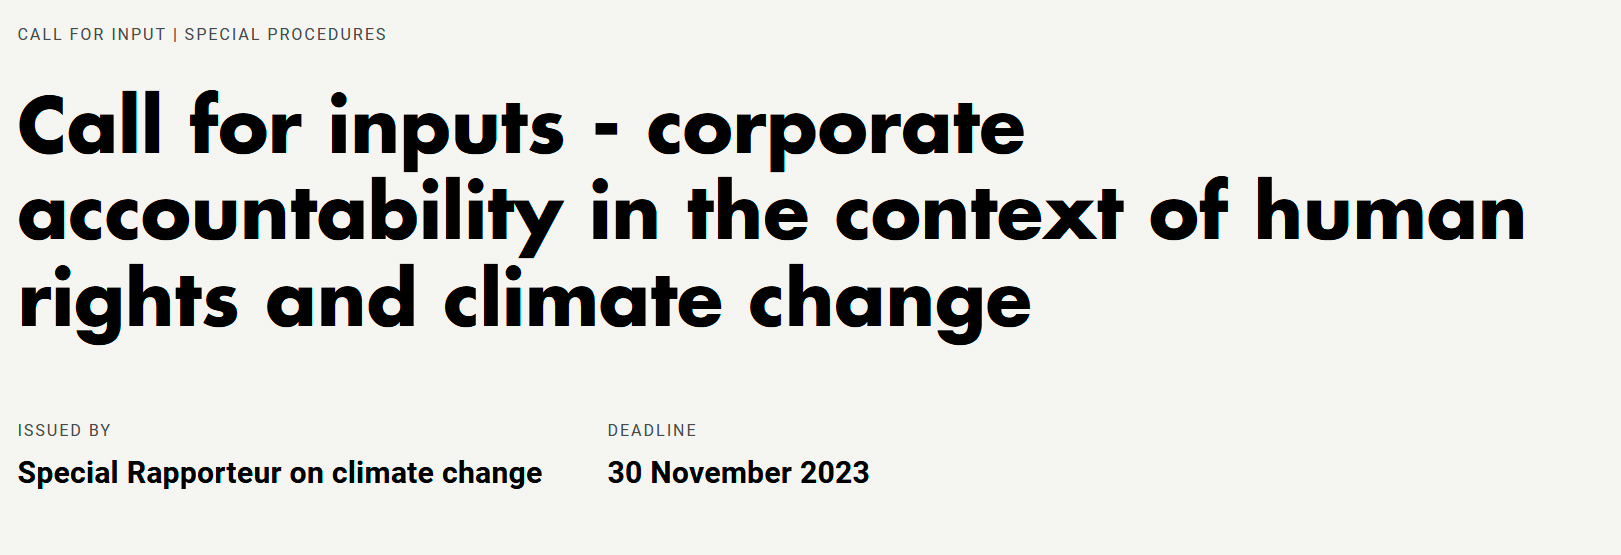 La responsabilidad de las empresas en el contexto de los derechos humanos y el cambio climático